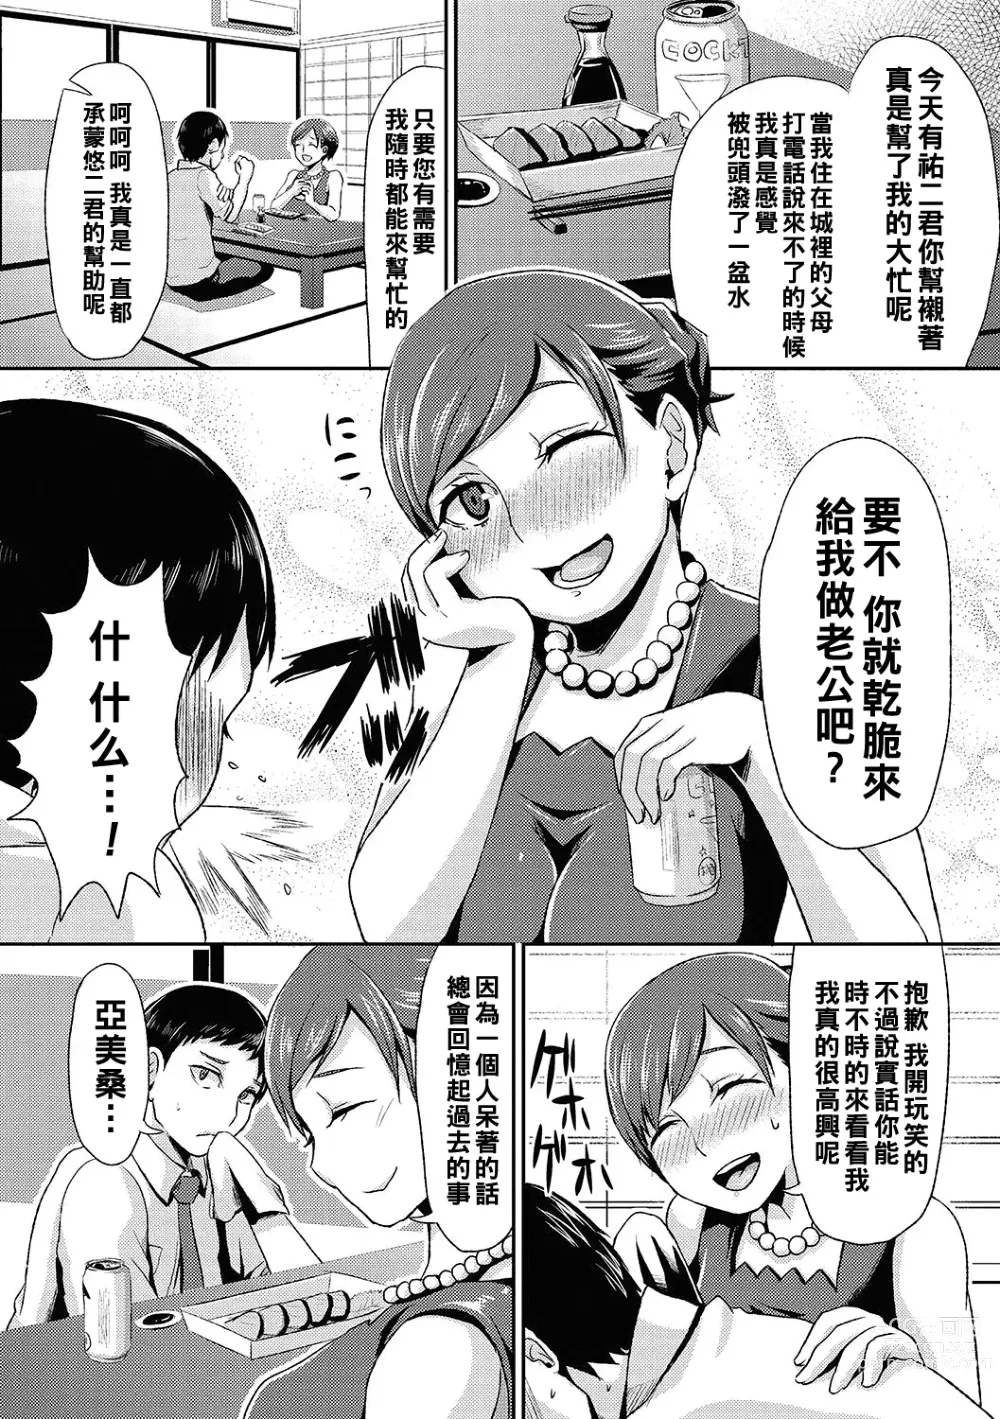 Page 4 of manga Miboujin no Stocking